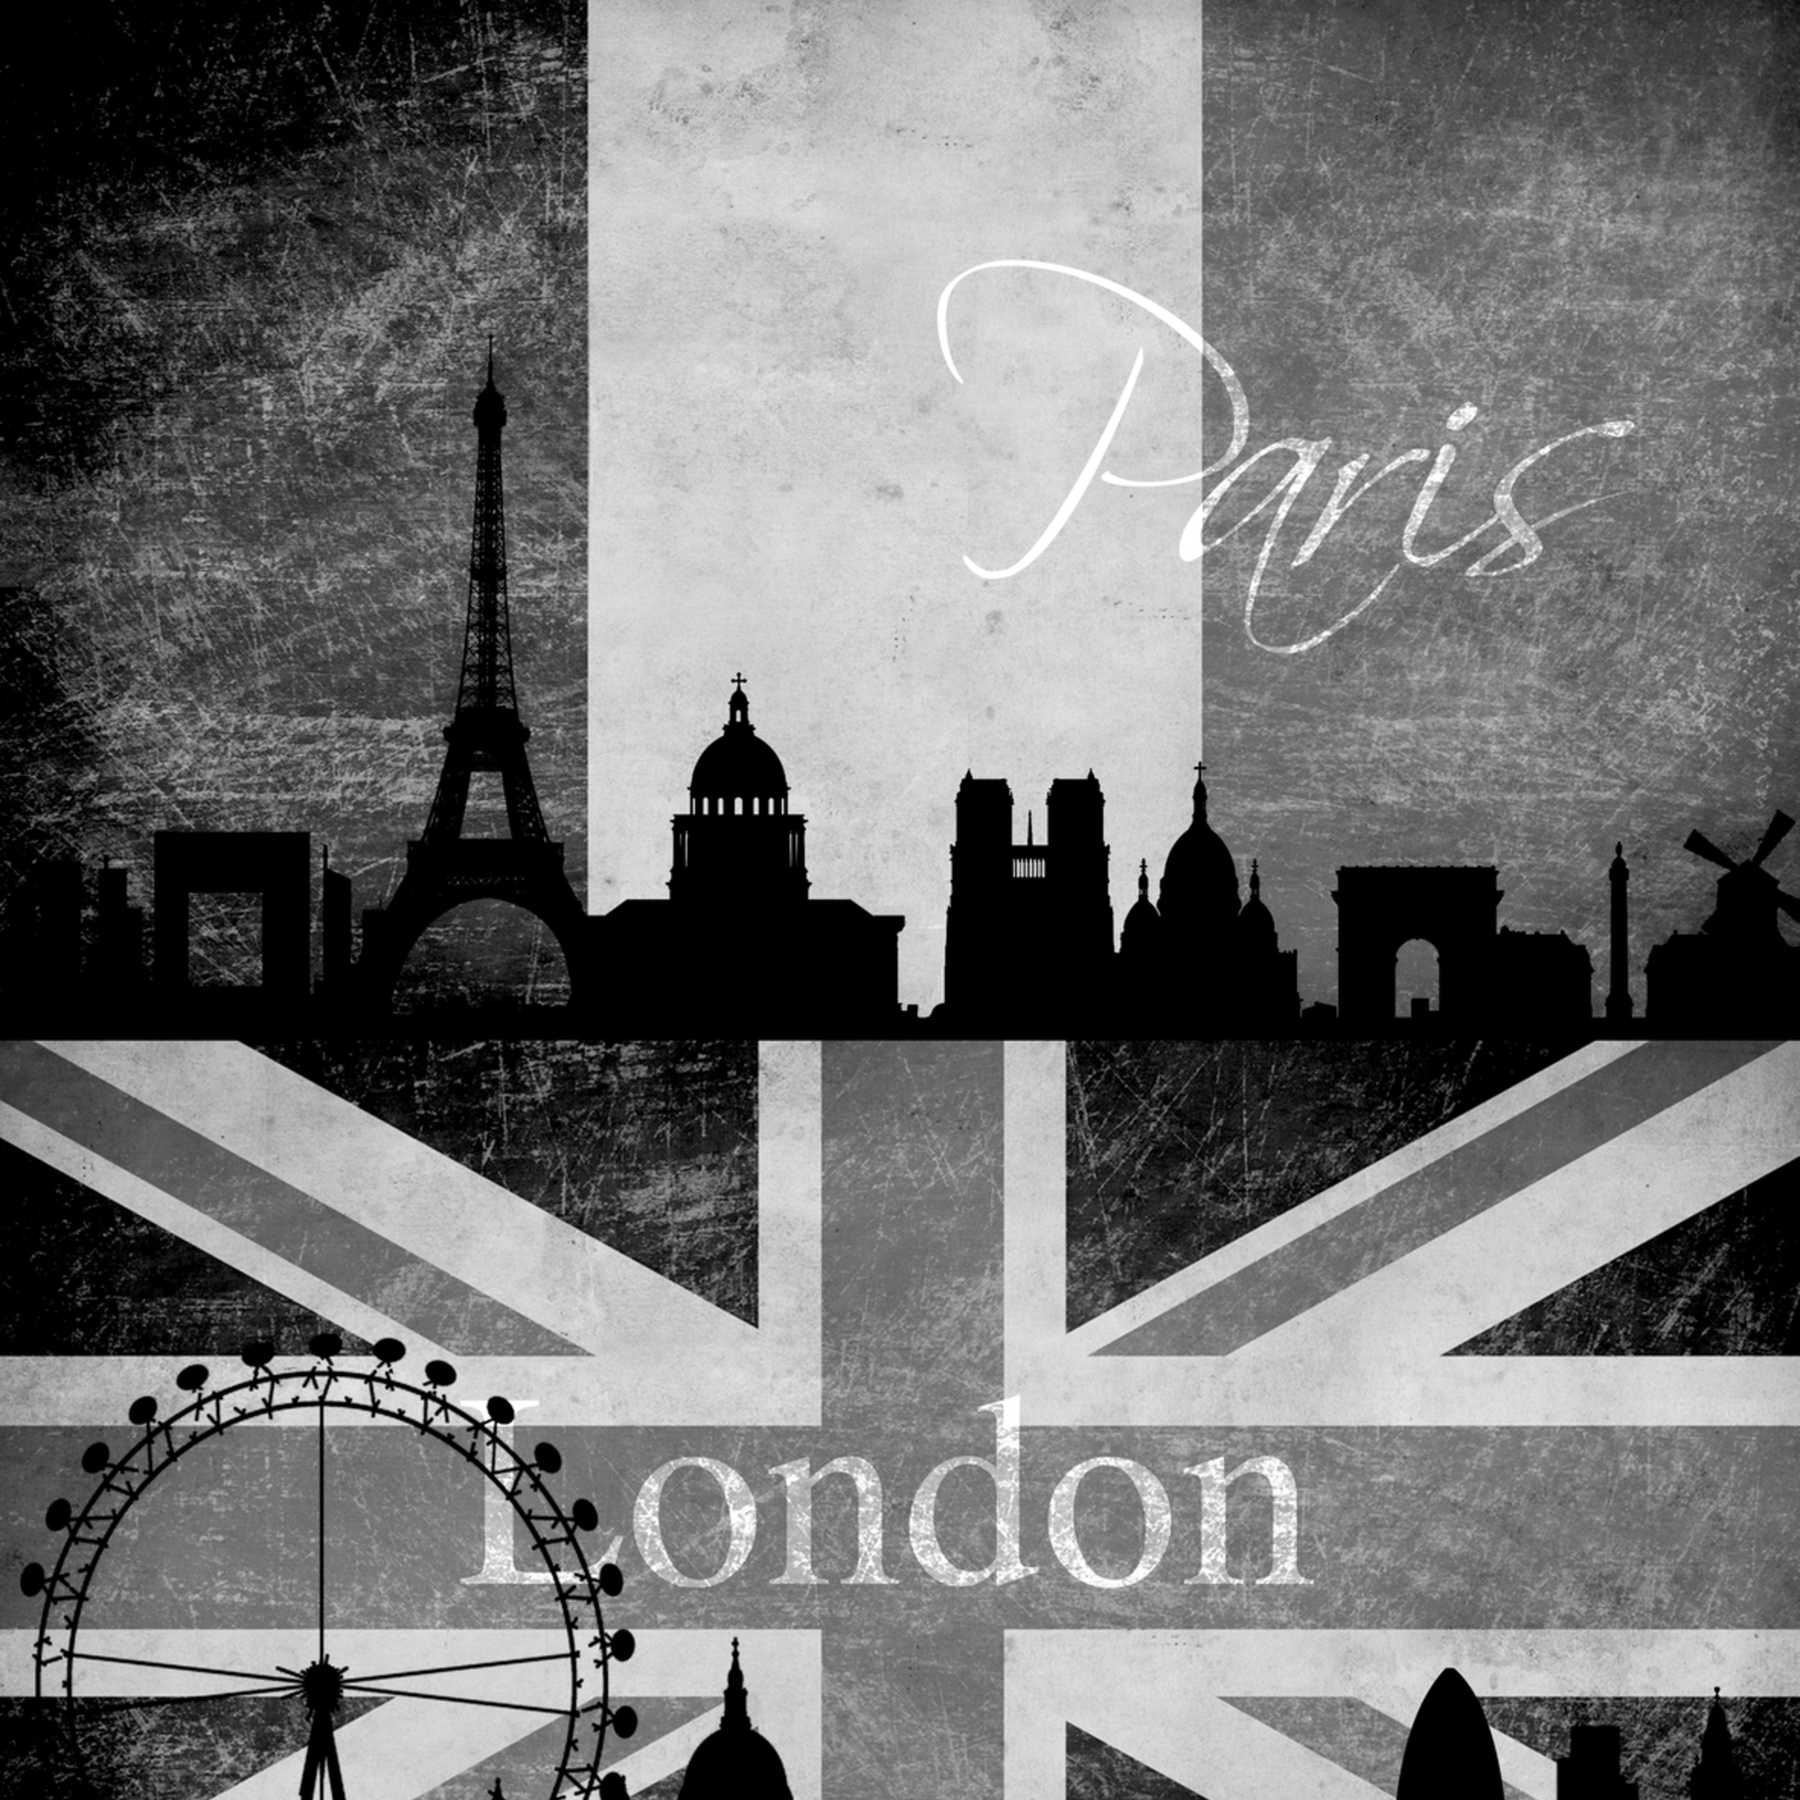             Tapetenpanel London, New York & Paris im Retro Look – Schwarz, Weiß
        